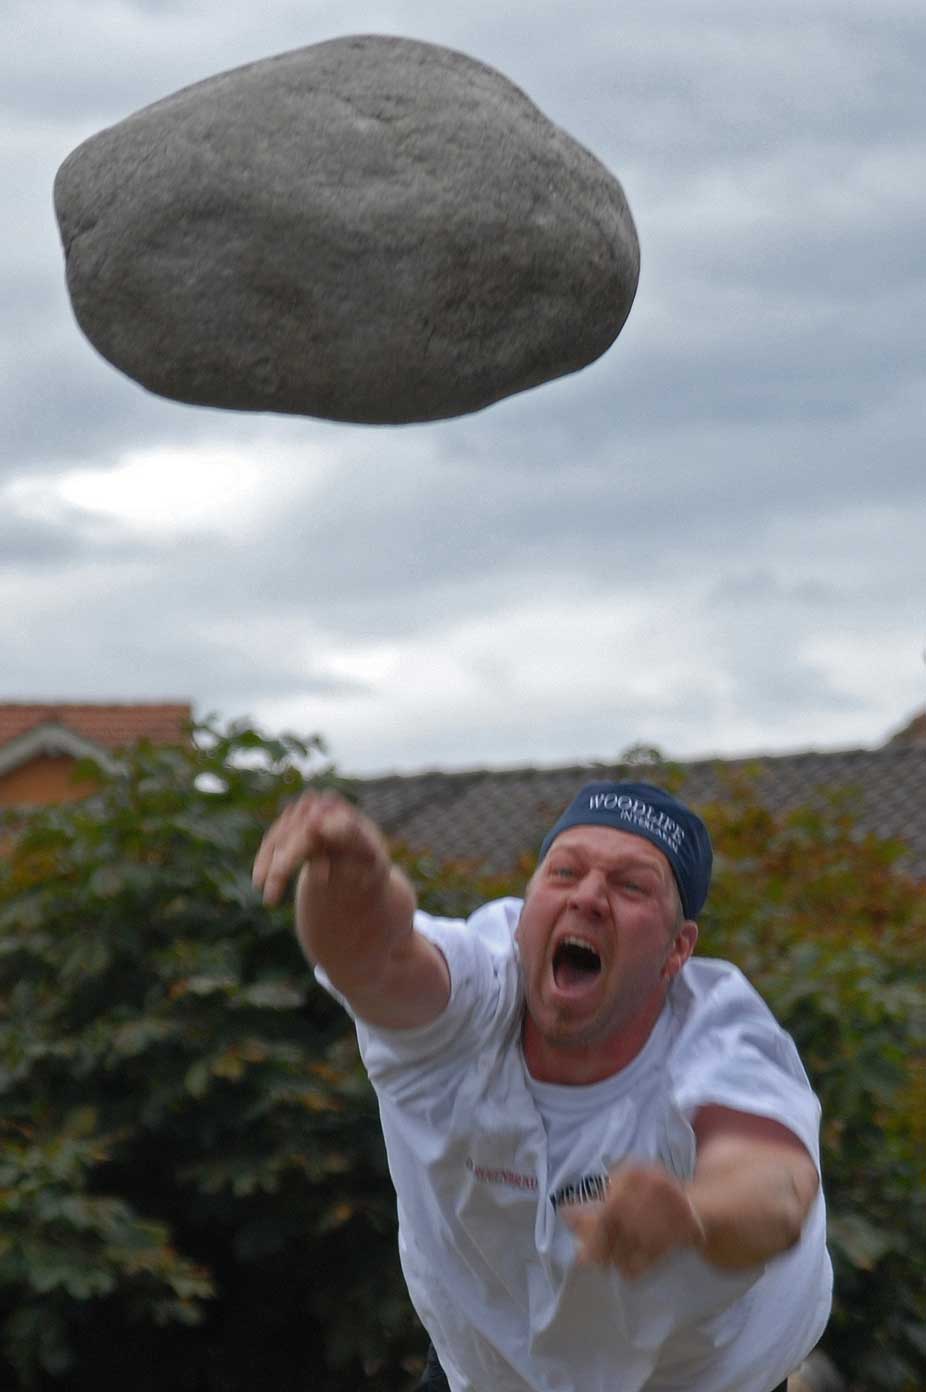 Stone thrower Peter Michel from Interlaken at the 2006 Unspunnen festival © Steiner/Verein Schweizerisches Trachten- und Alphirtenfest Unspunnen